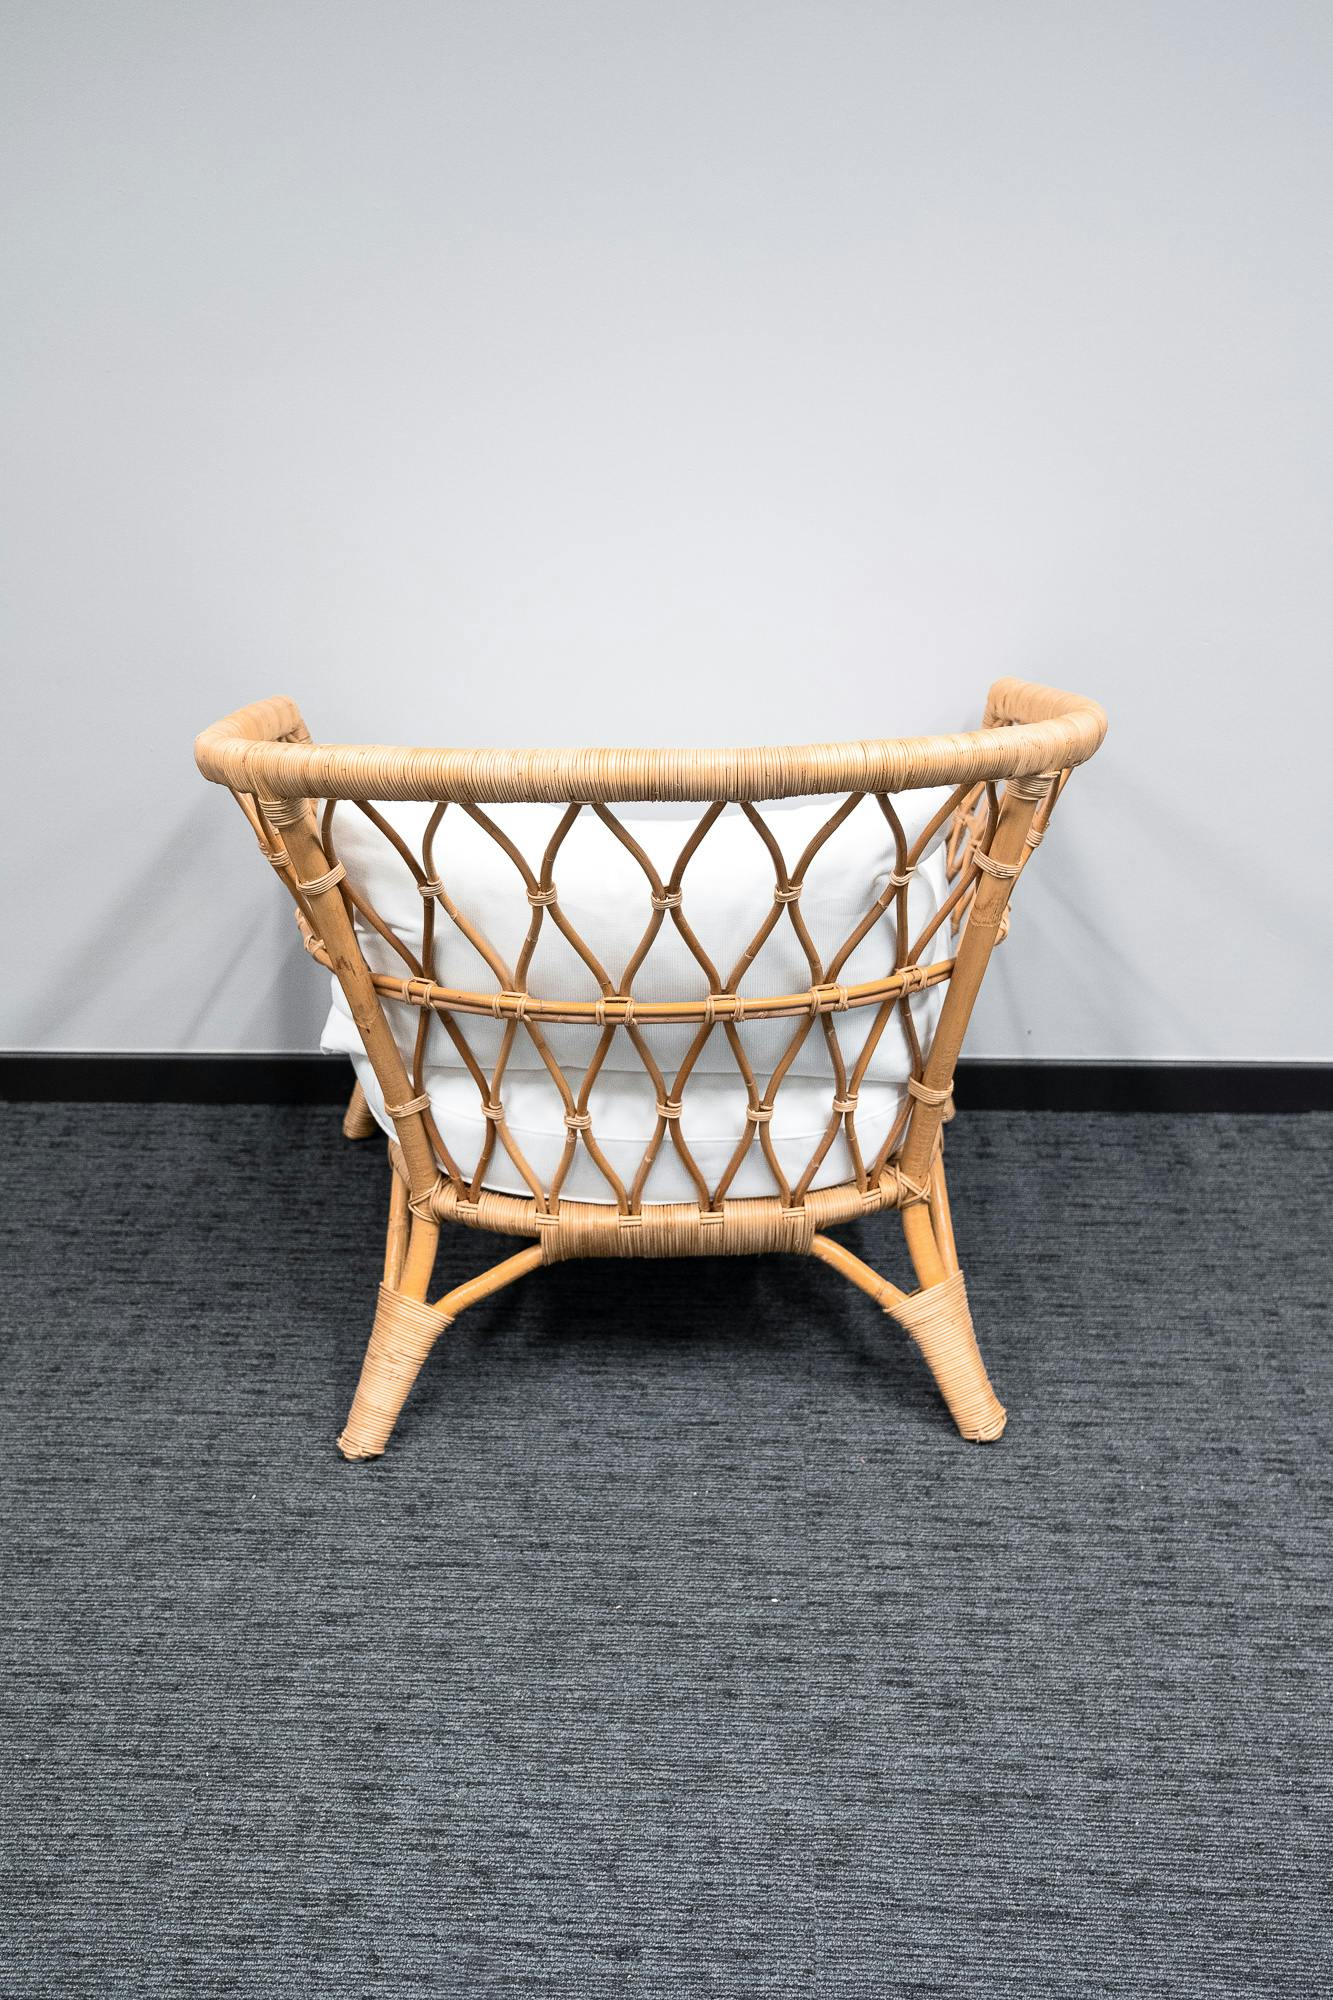 Rieten fauteuil met witte kussens - Tweedehands kwaliteit "Leunstoelen en luiers" - Relieve Furniture